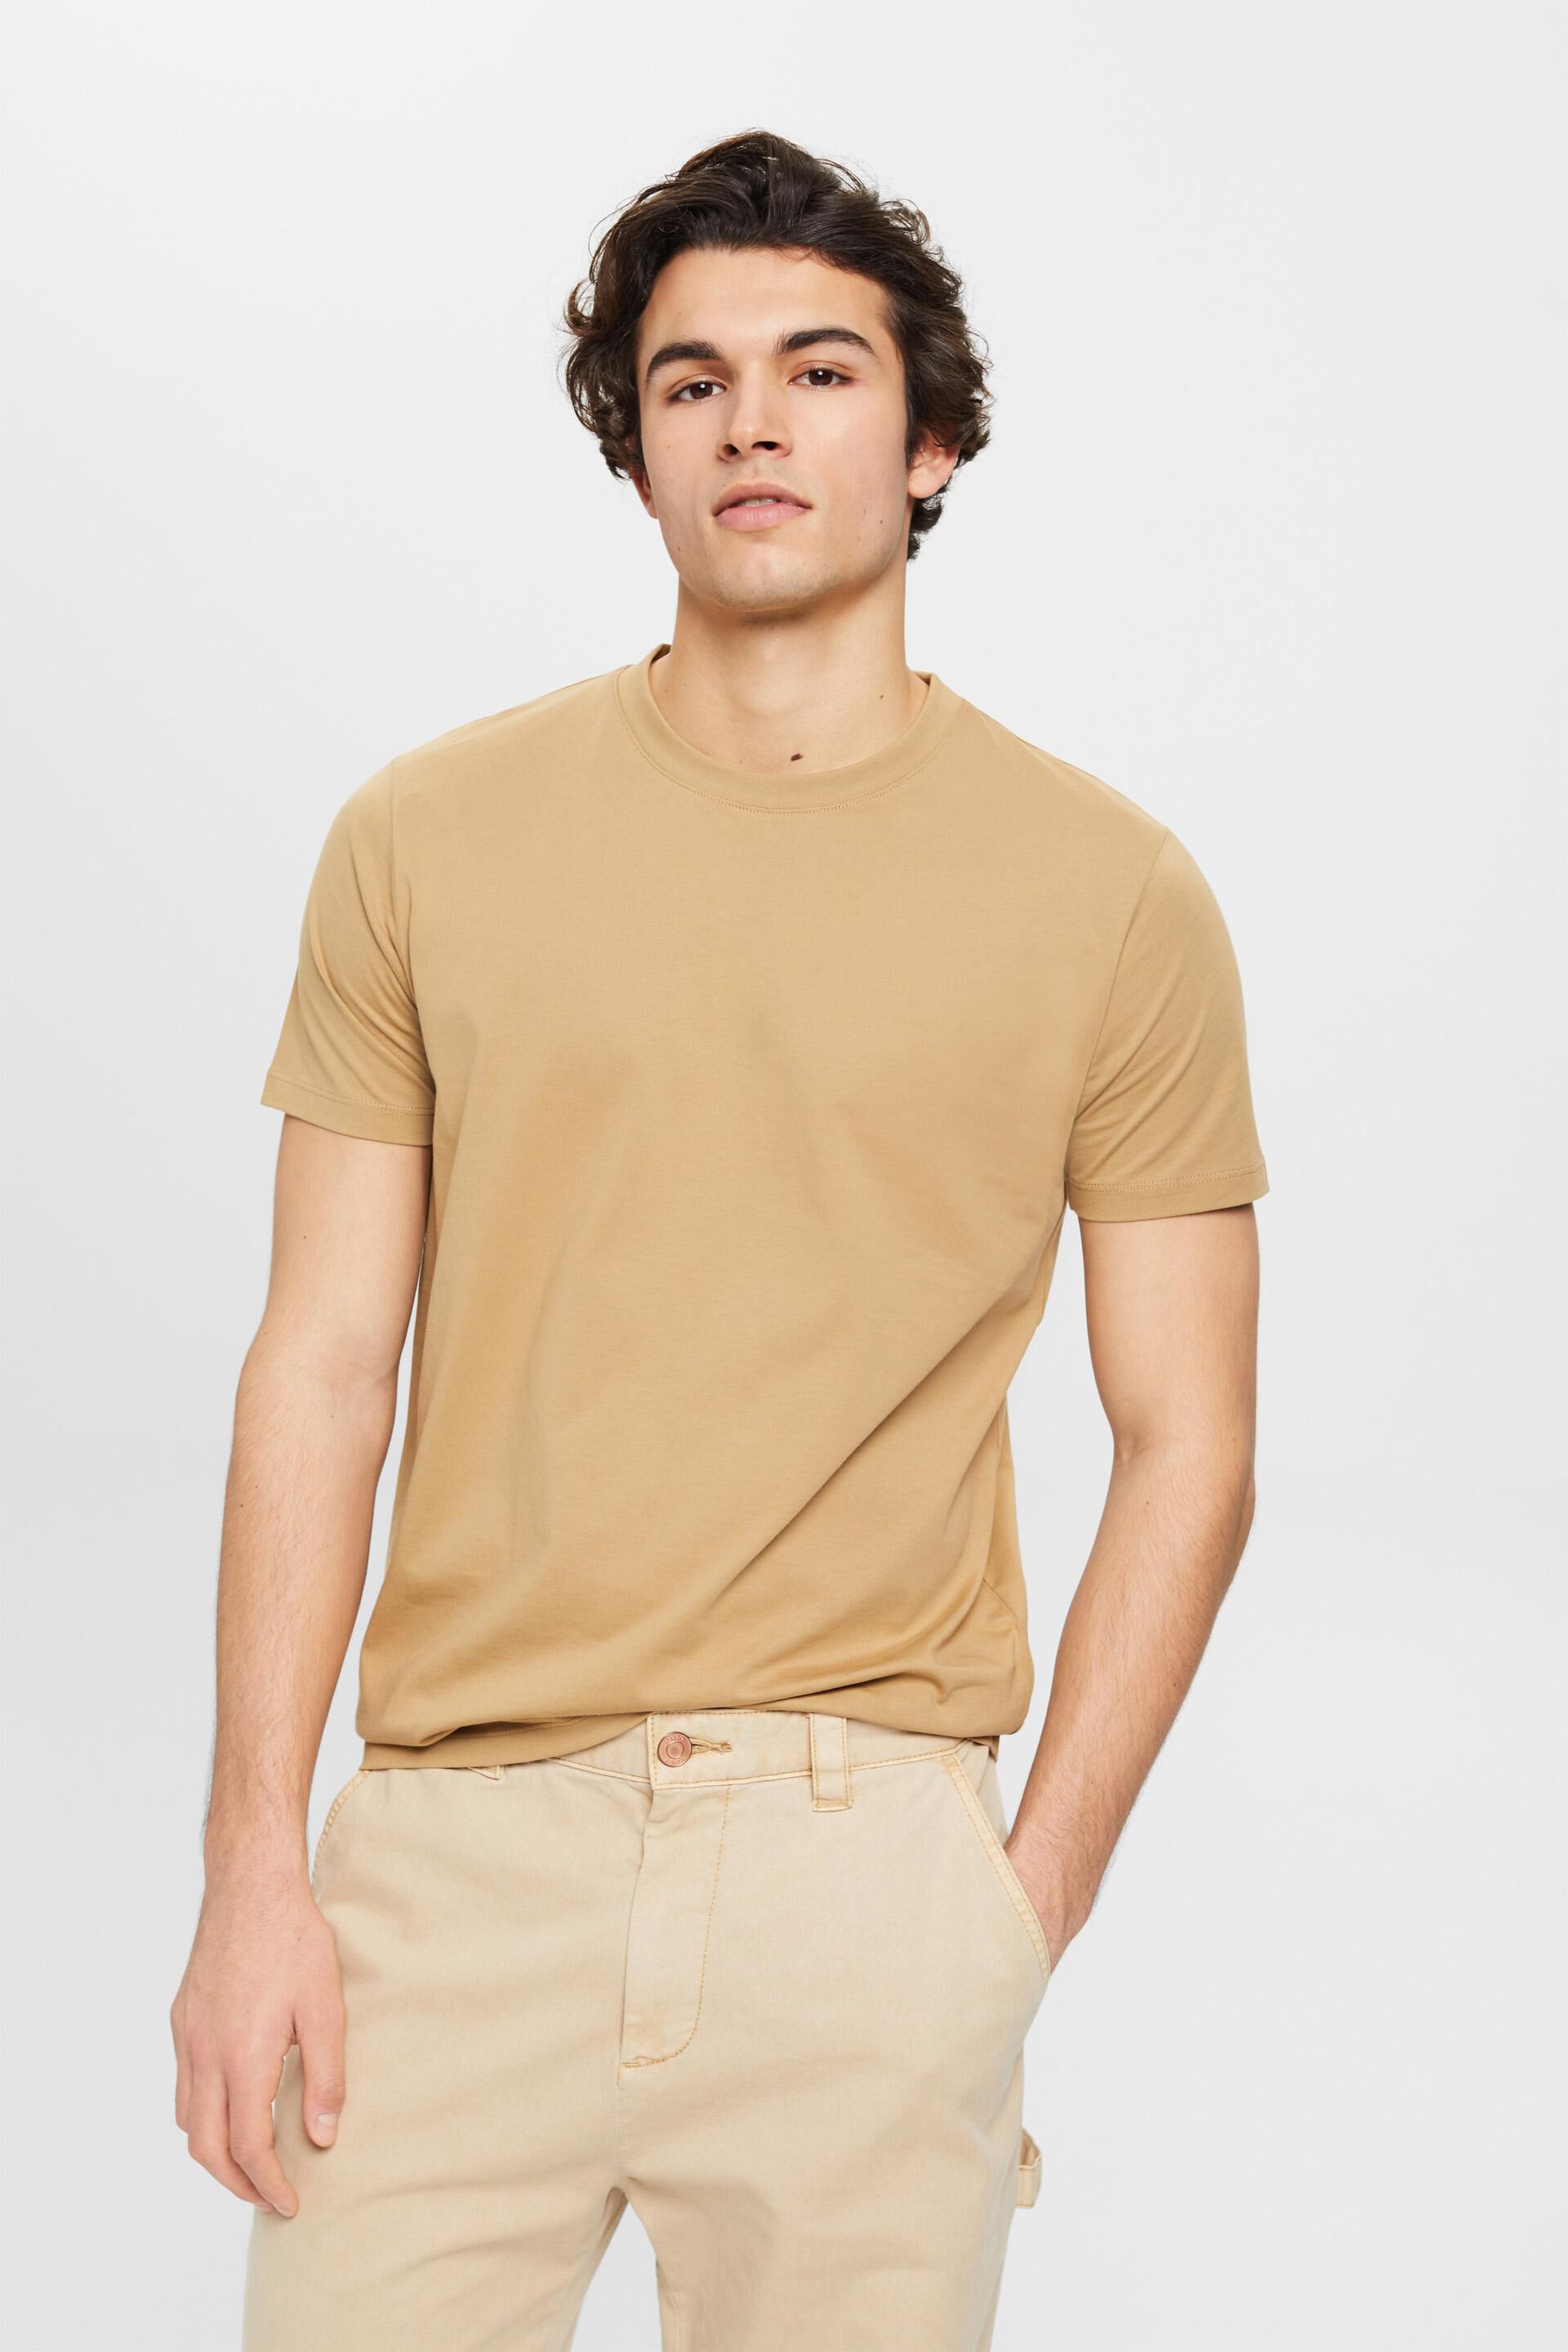 Esprit Pure crew t-shirt neck cotton